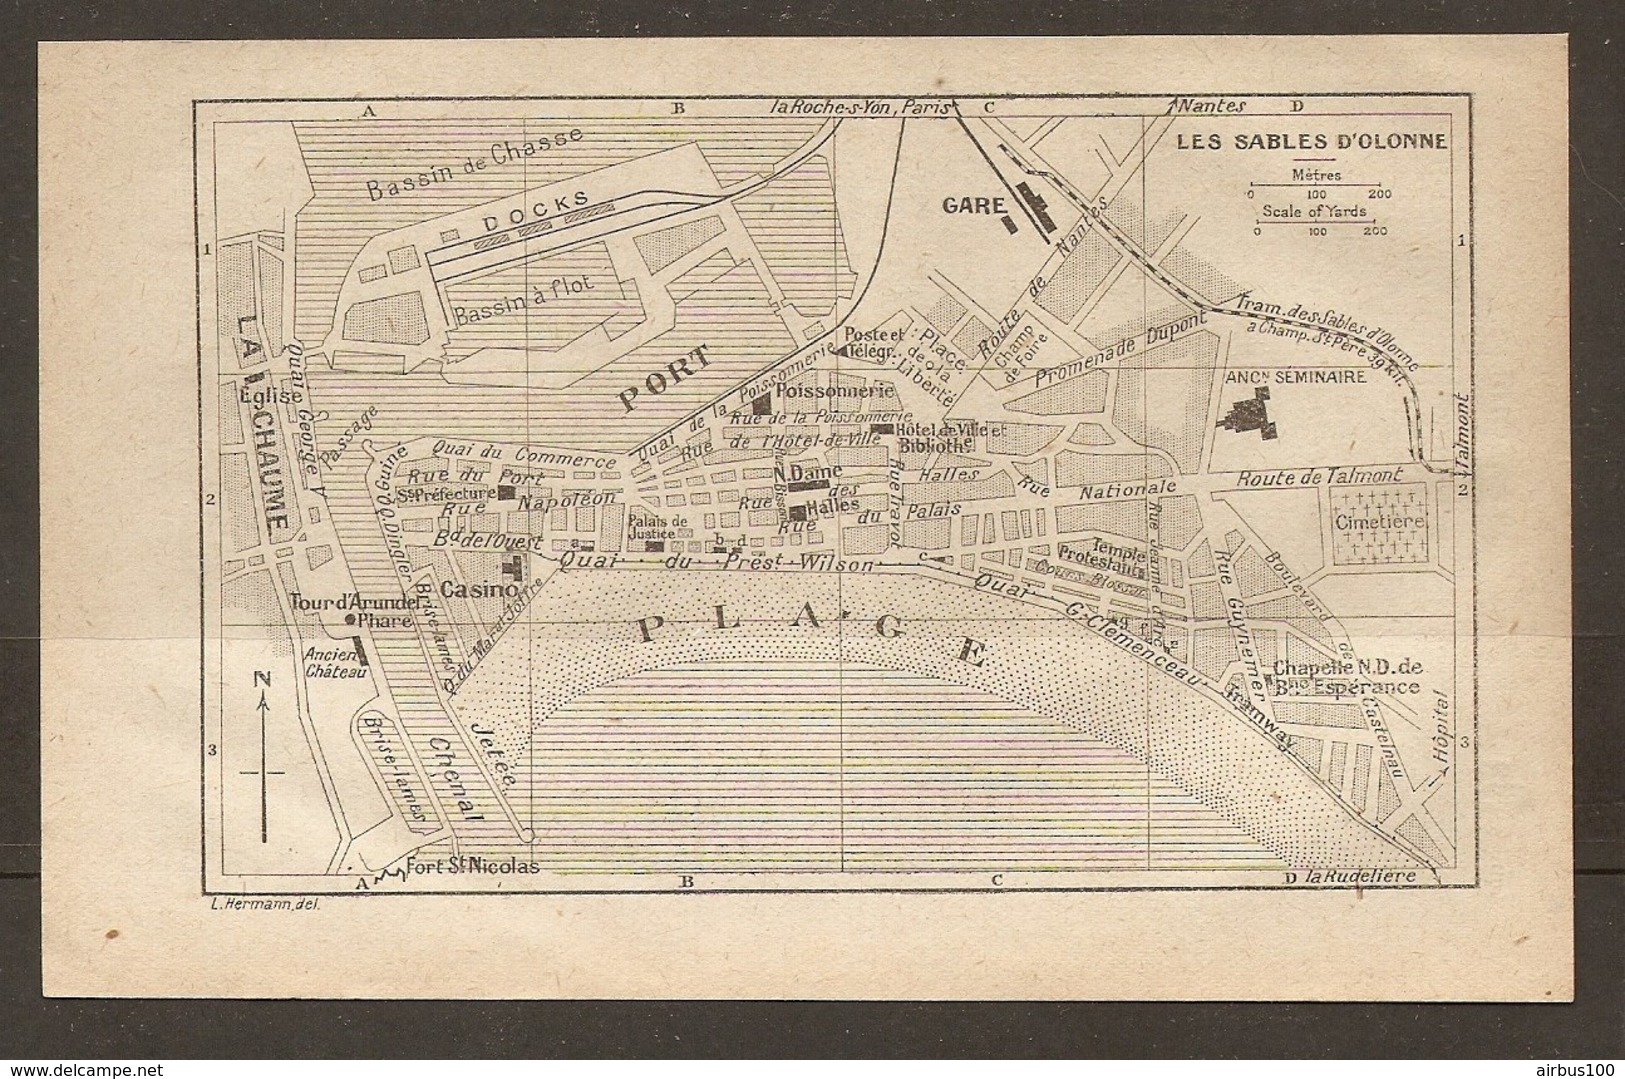 CARTE PLAN 1922 - LES SABLES D'OLONNE - BASSIN De CHASSE BASSIN à FLOT DOCKS LA CHAUME TOUR D'ARUNDEL PLAGE - Topographical Maps